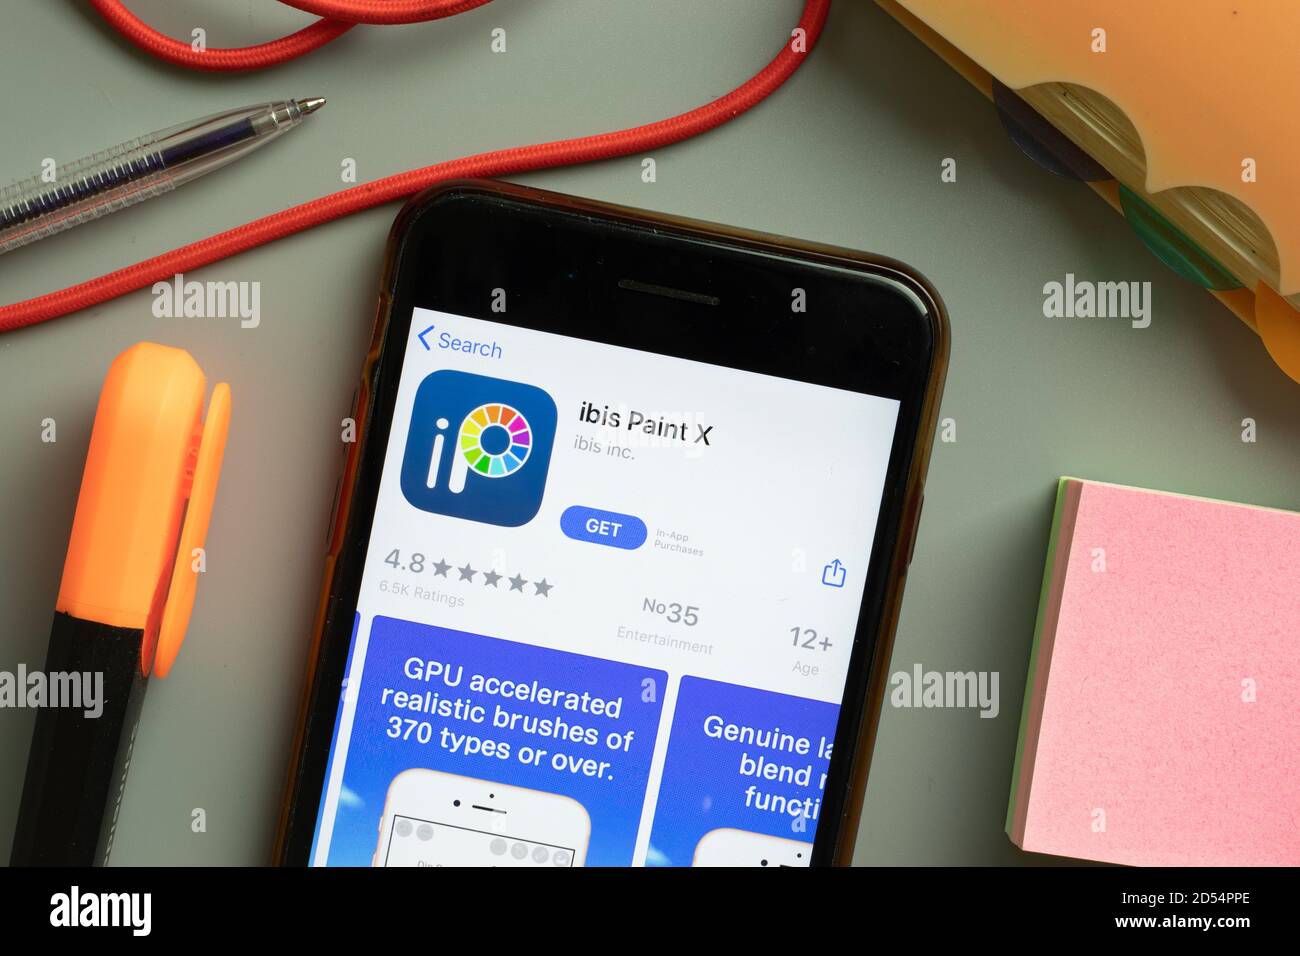 New York, Stati Uniti d'America - 29 settembre 2020: Primo piano del logo dell'app mobile ibis Paint X sullo schermo del telefono, editoriale illustrativo Foto Stock